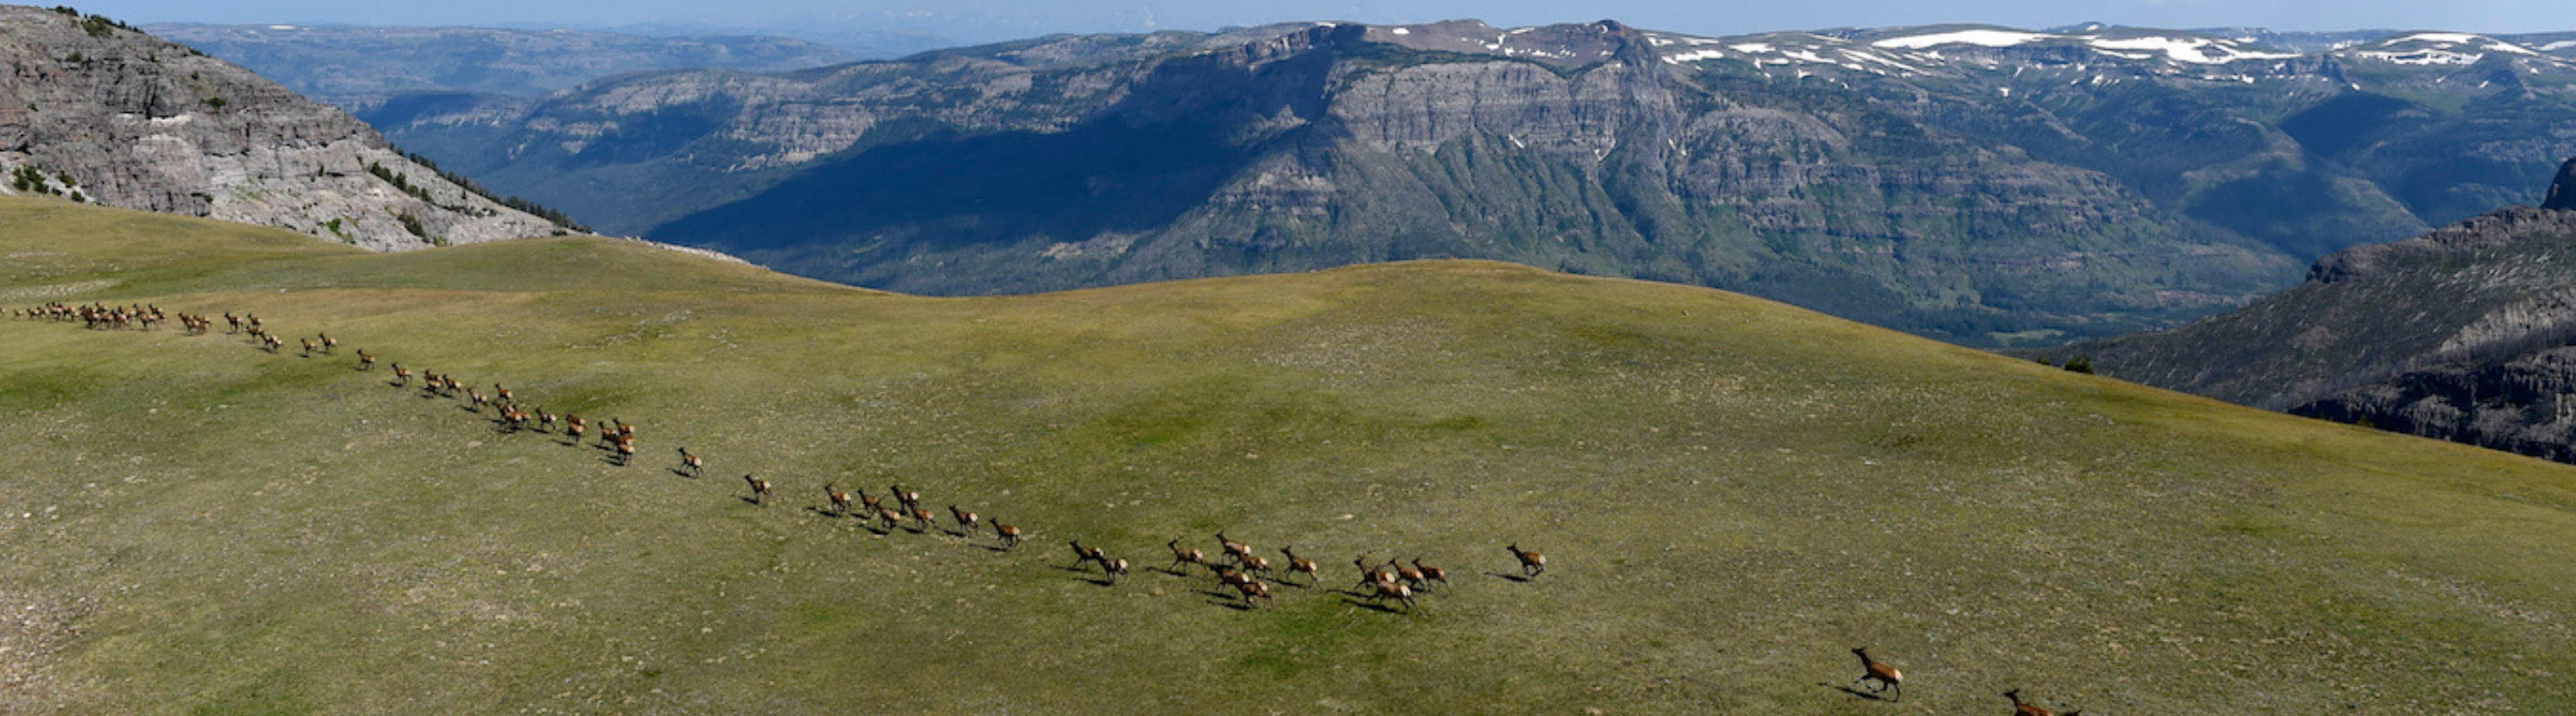 Elk migrating across a large landscape